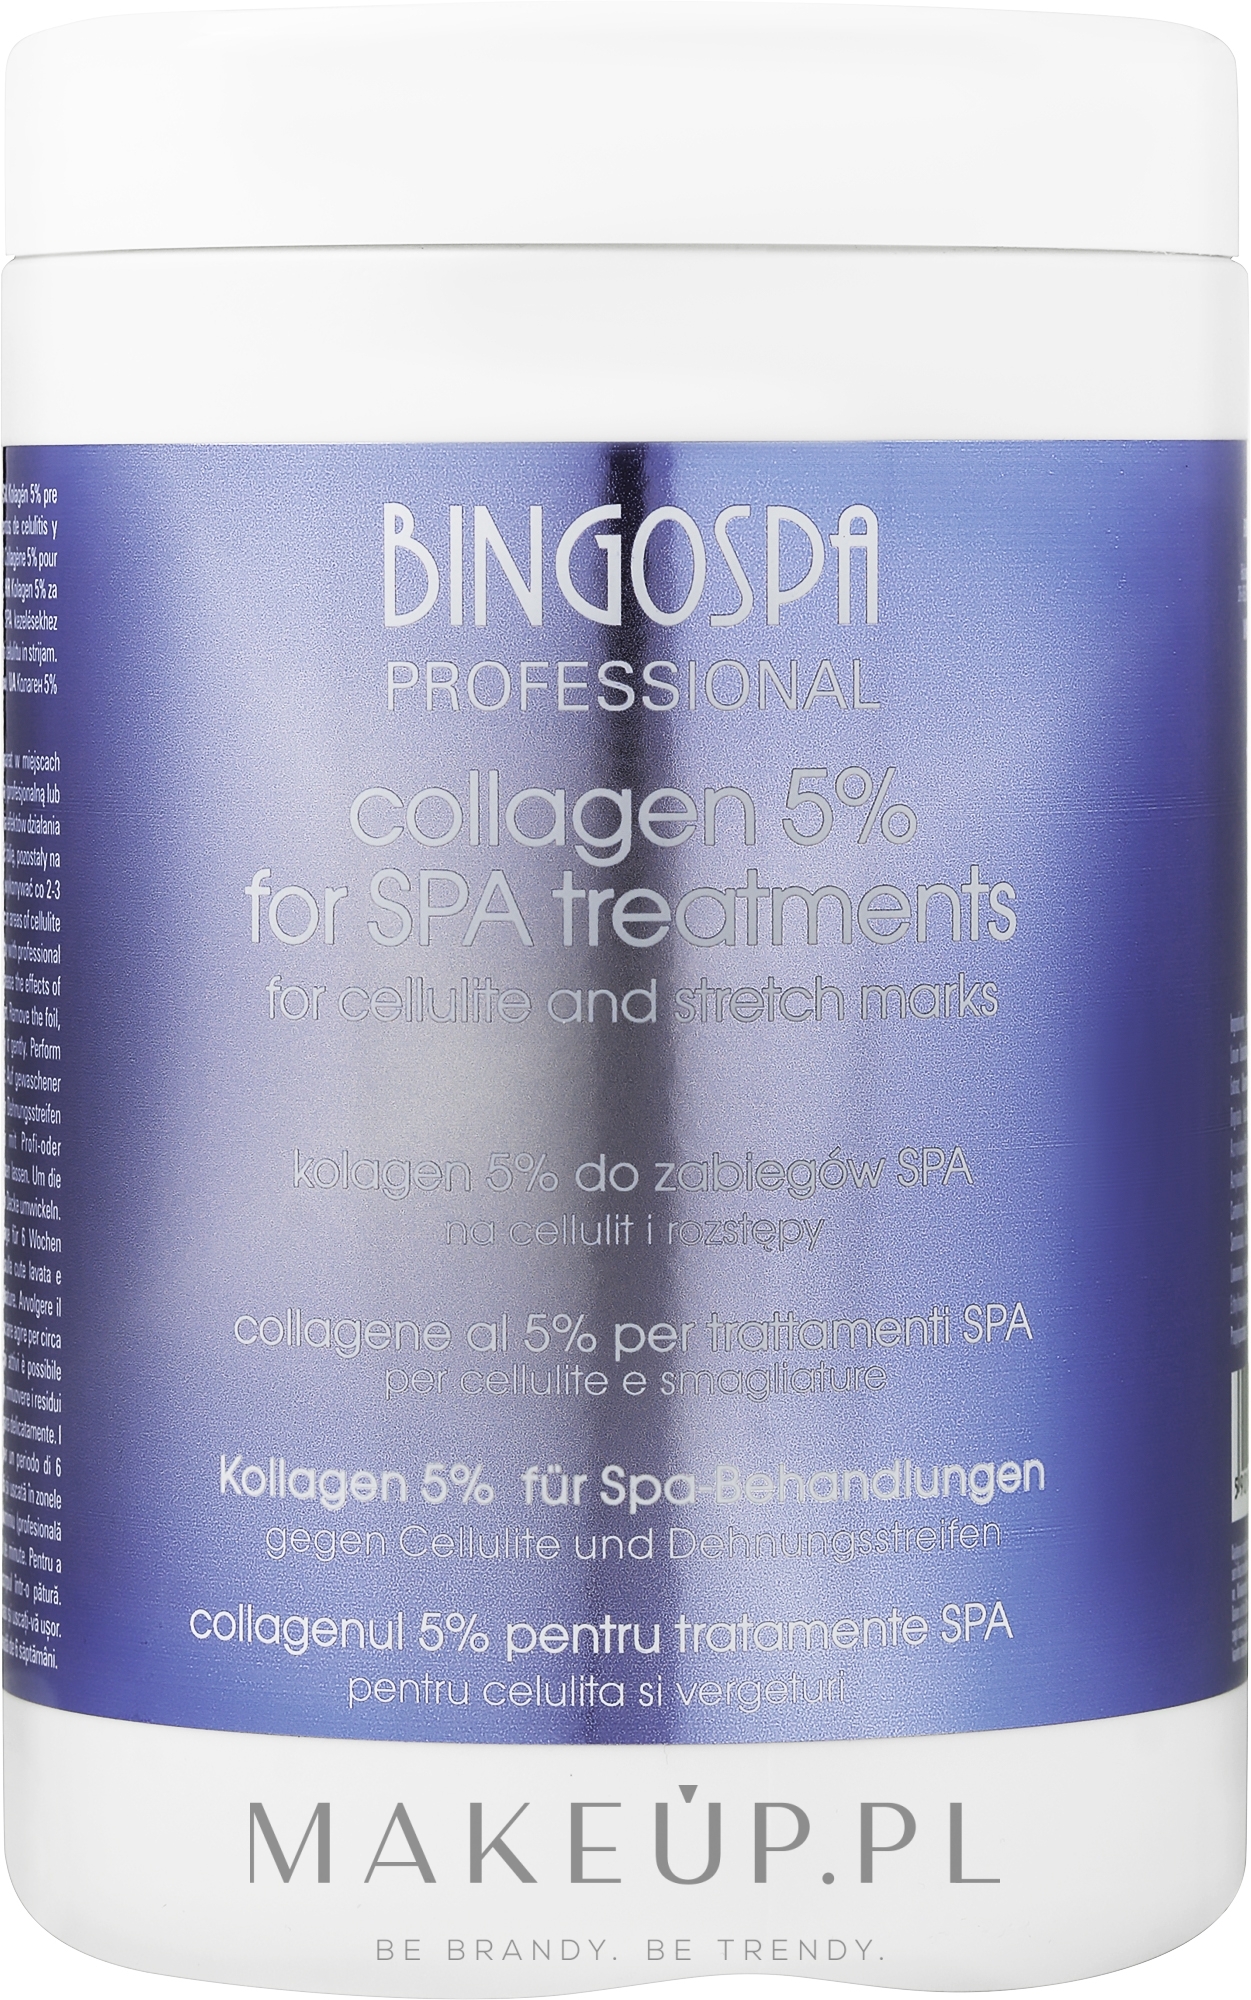 Kolagen 5% do zabiegów spa na cellulit i rozstępy - BingoSpa Collagen Wraps For Cellulite And Stretch Marks — Zdjęcie 1000 g